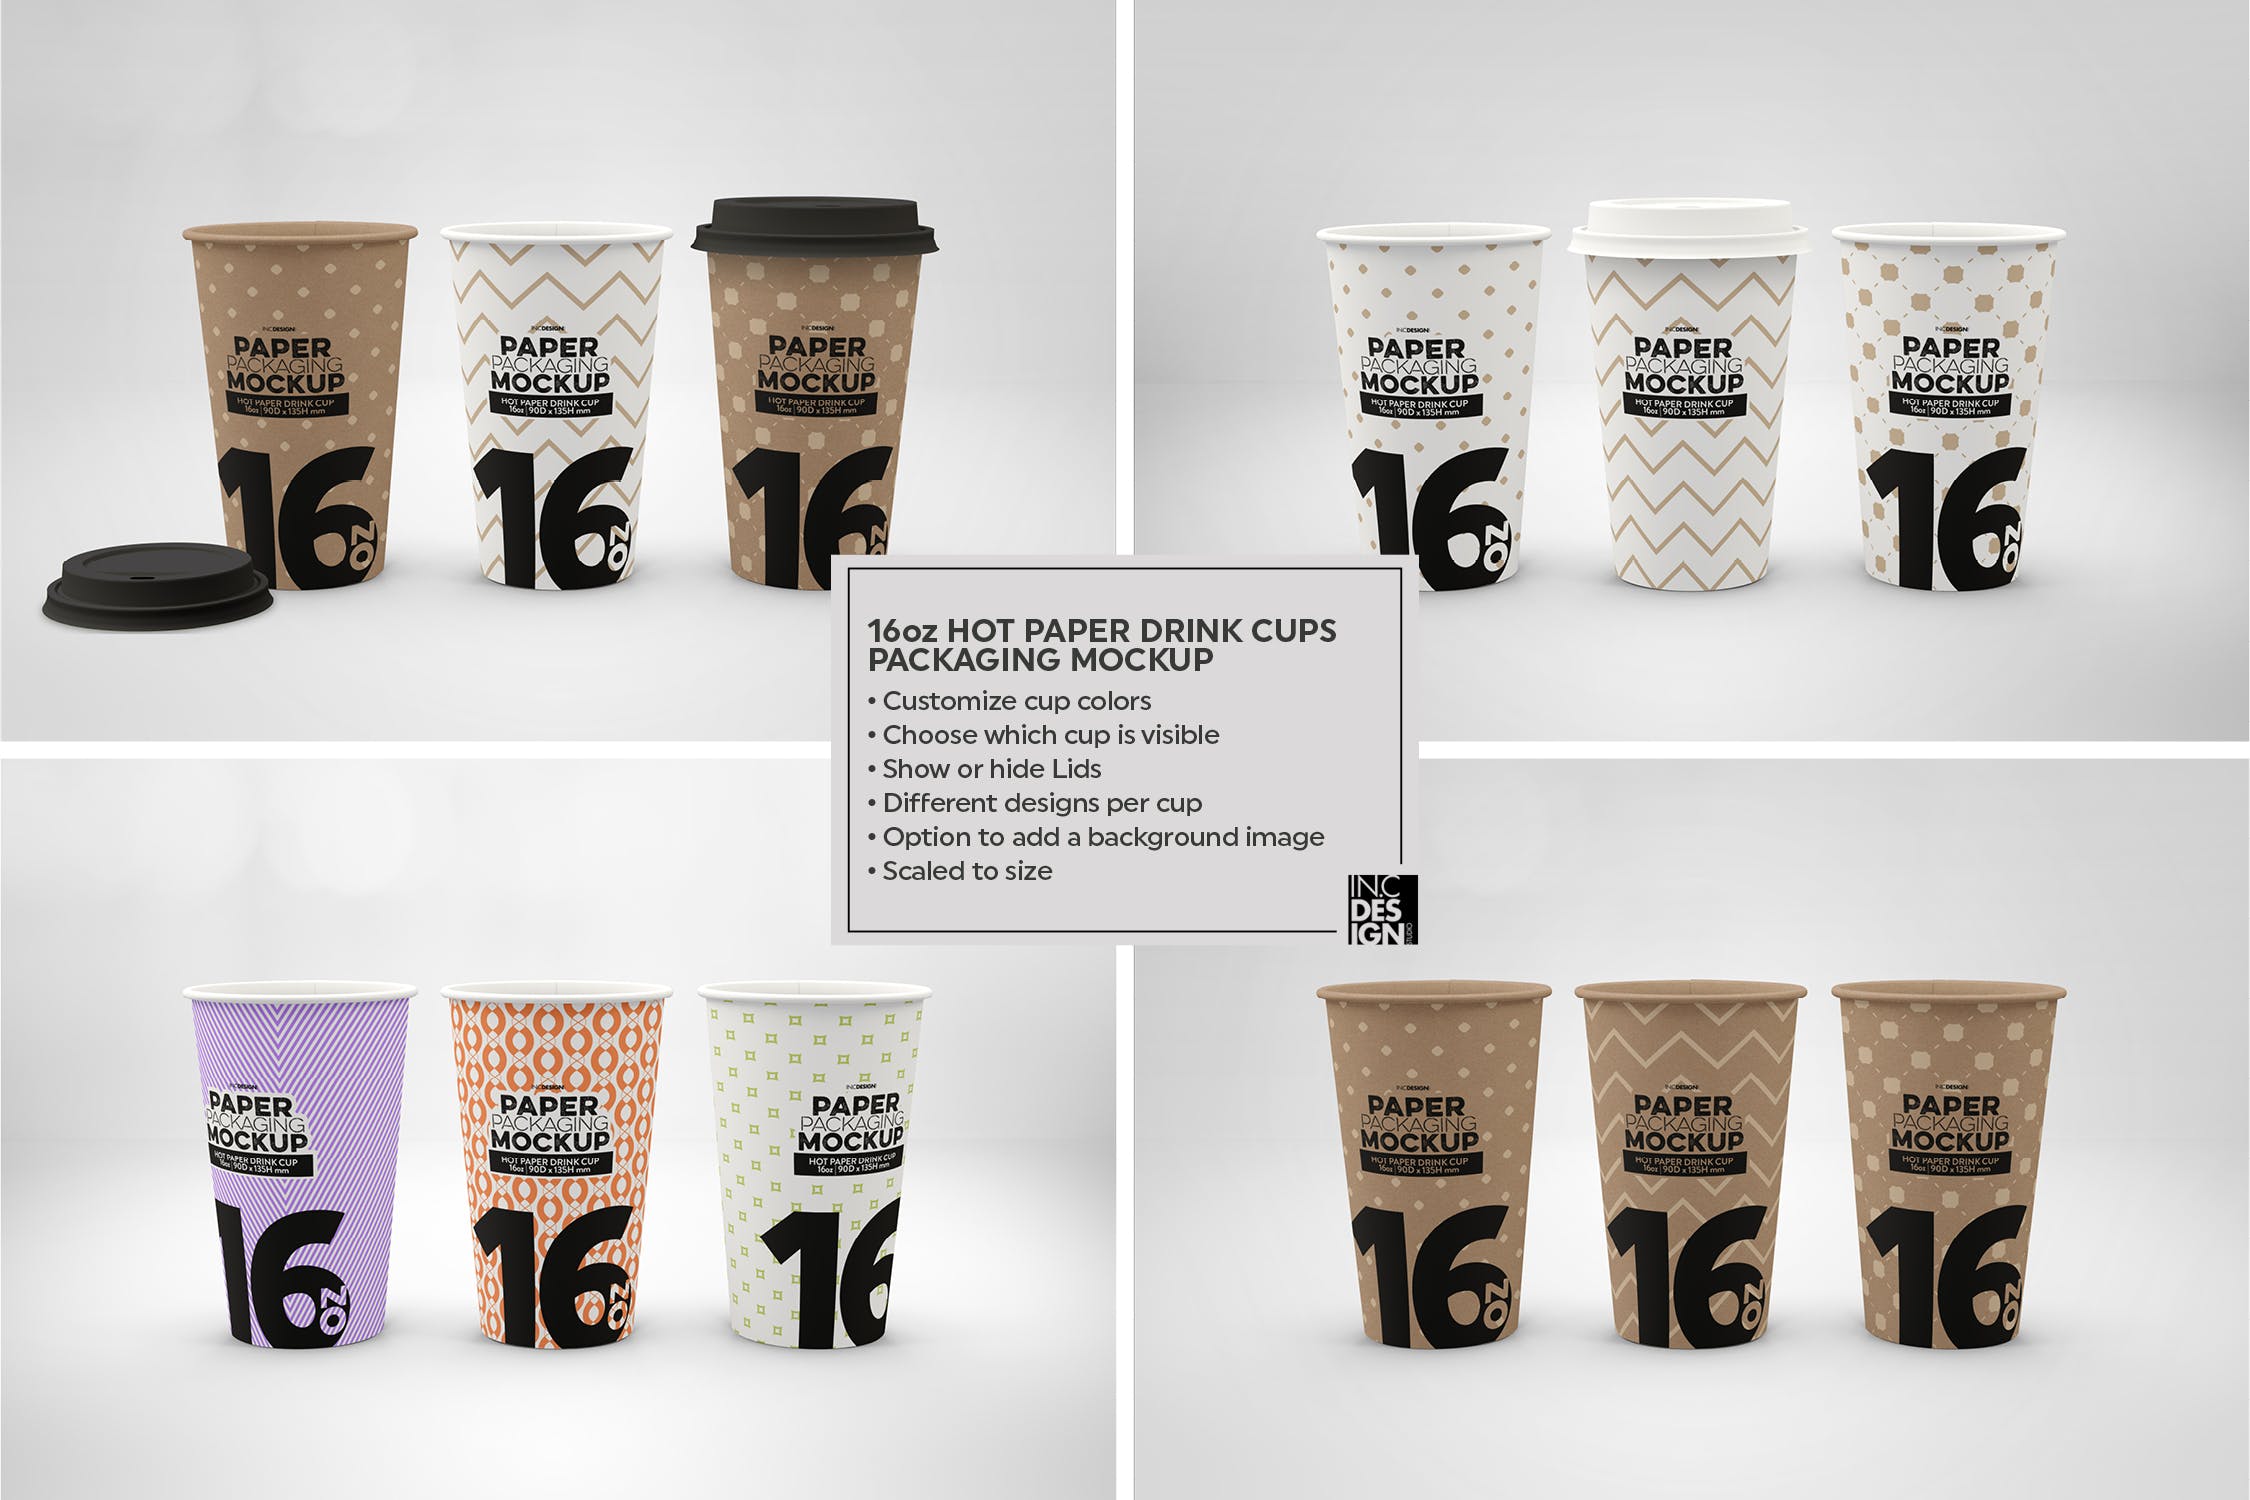 热饮一次性纸杯外观设计第一素材精选 Paper Hot Drink Cups Packaging Mockup插图(9)